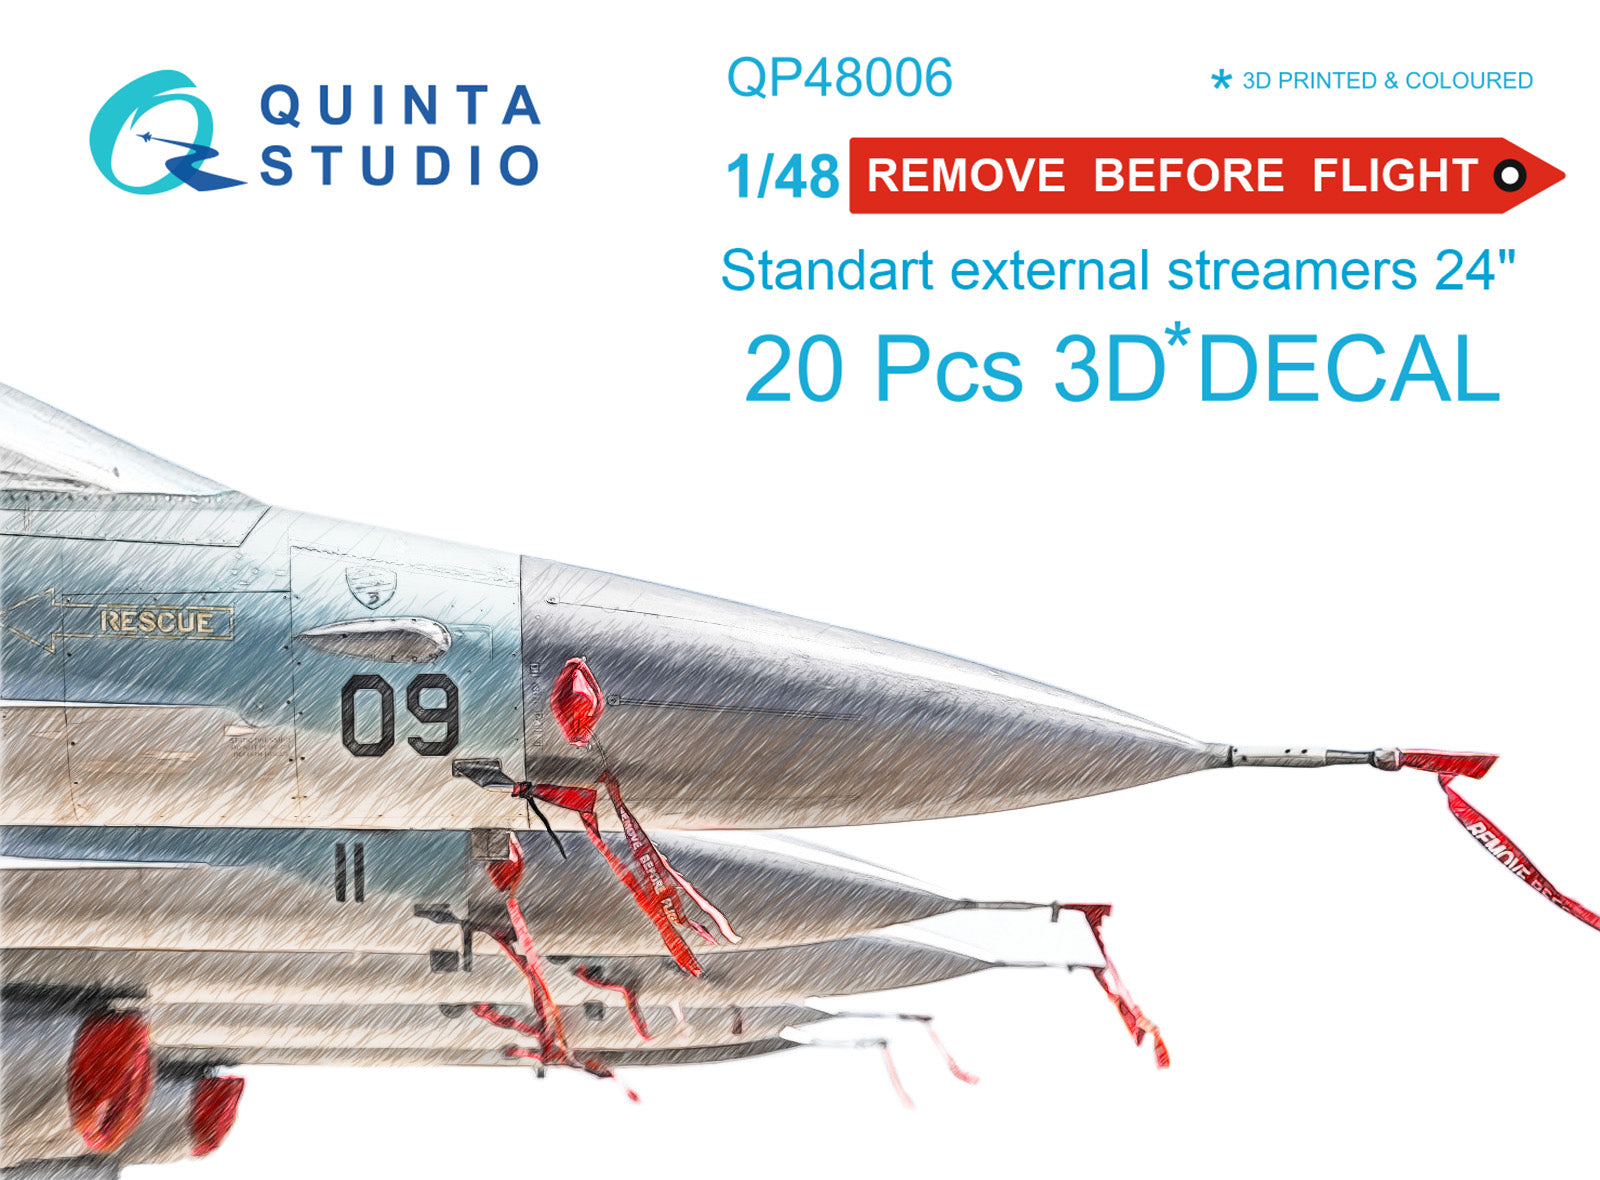 Quinta Studio - 1/48 "Remove Before flight" standart external streamer 24"- QP48006, 20pcs